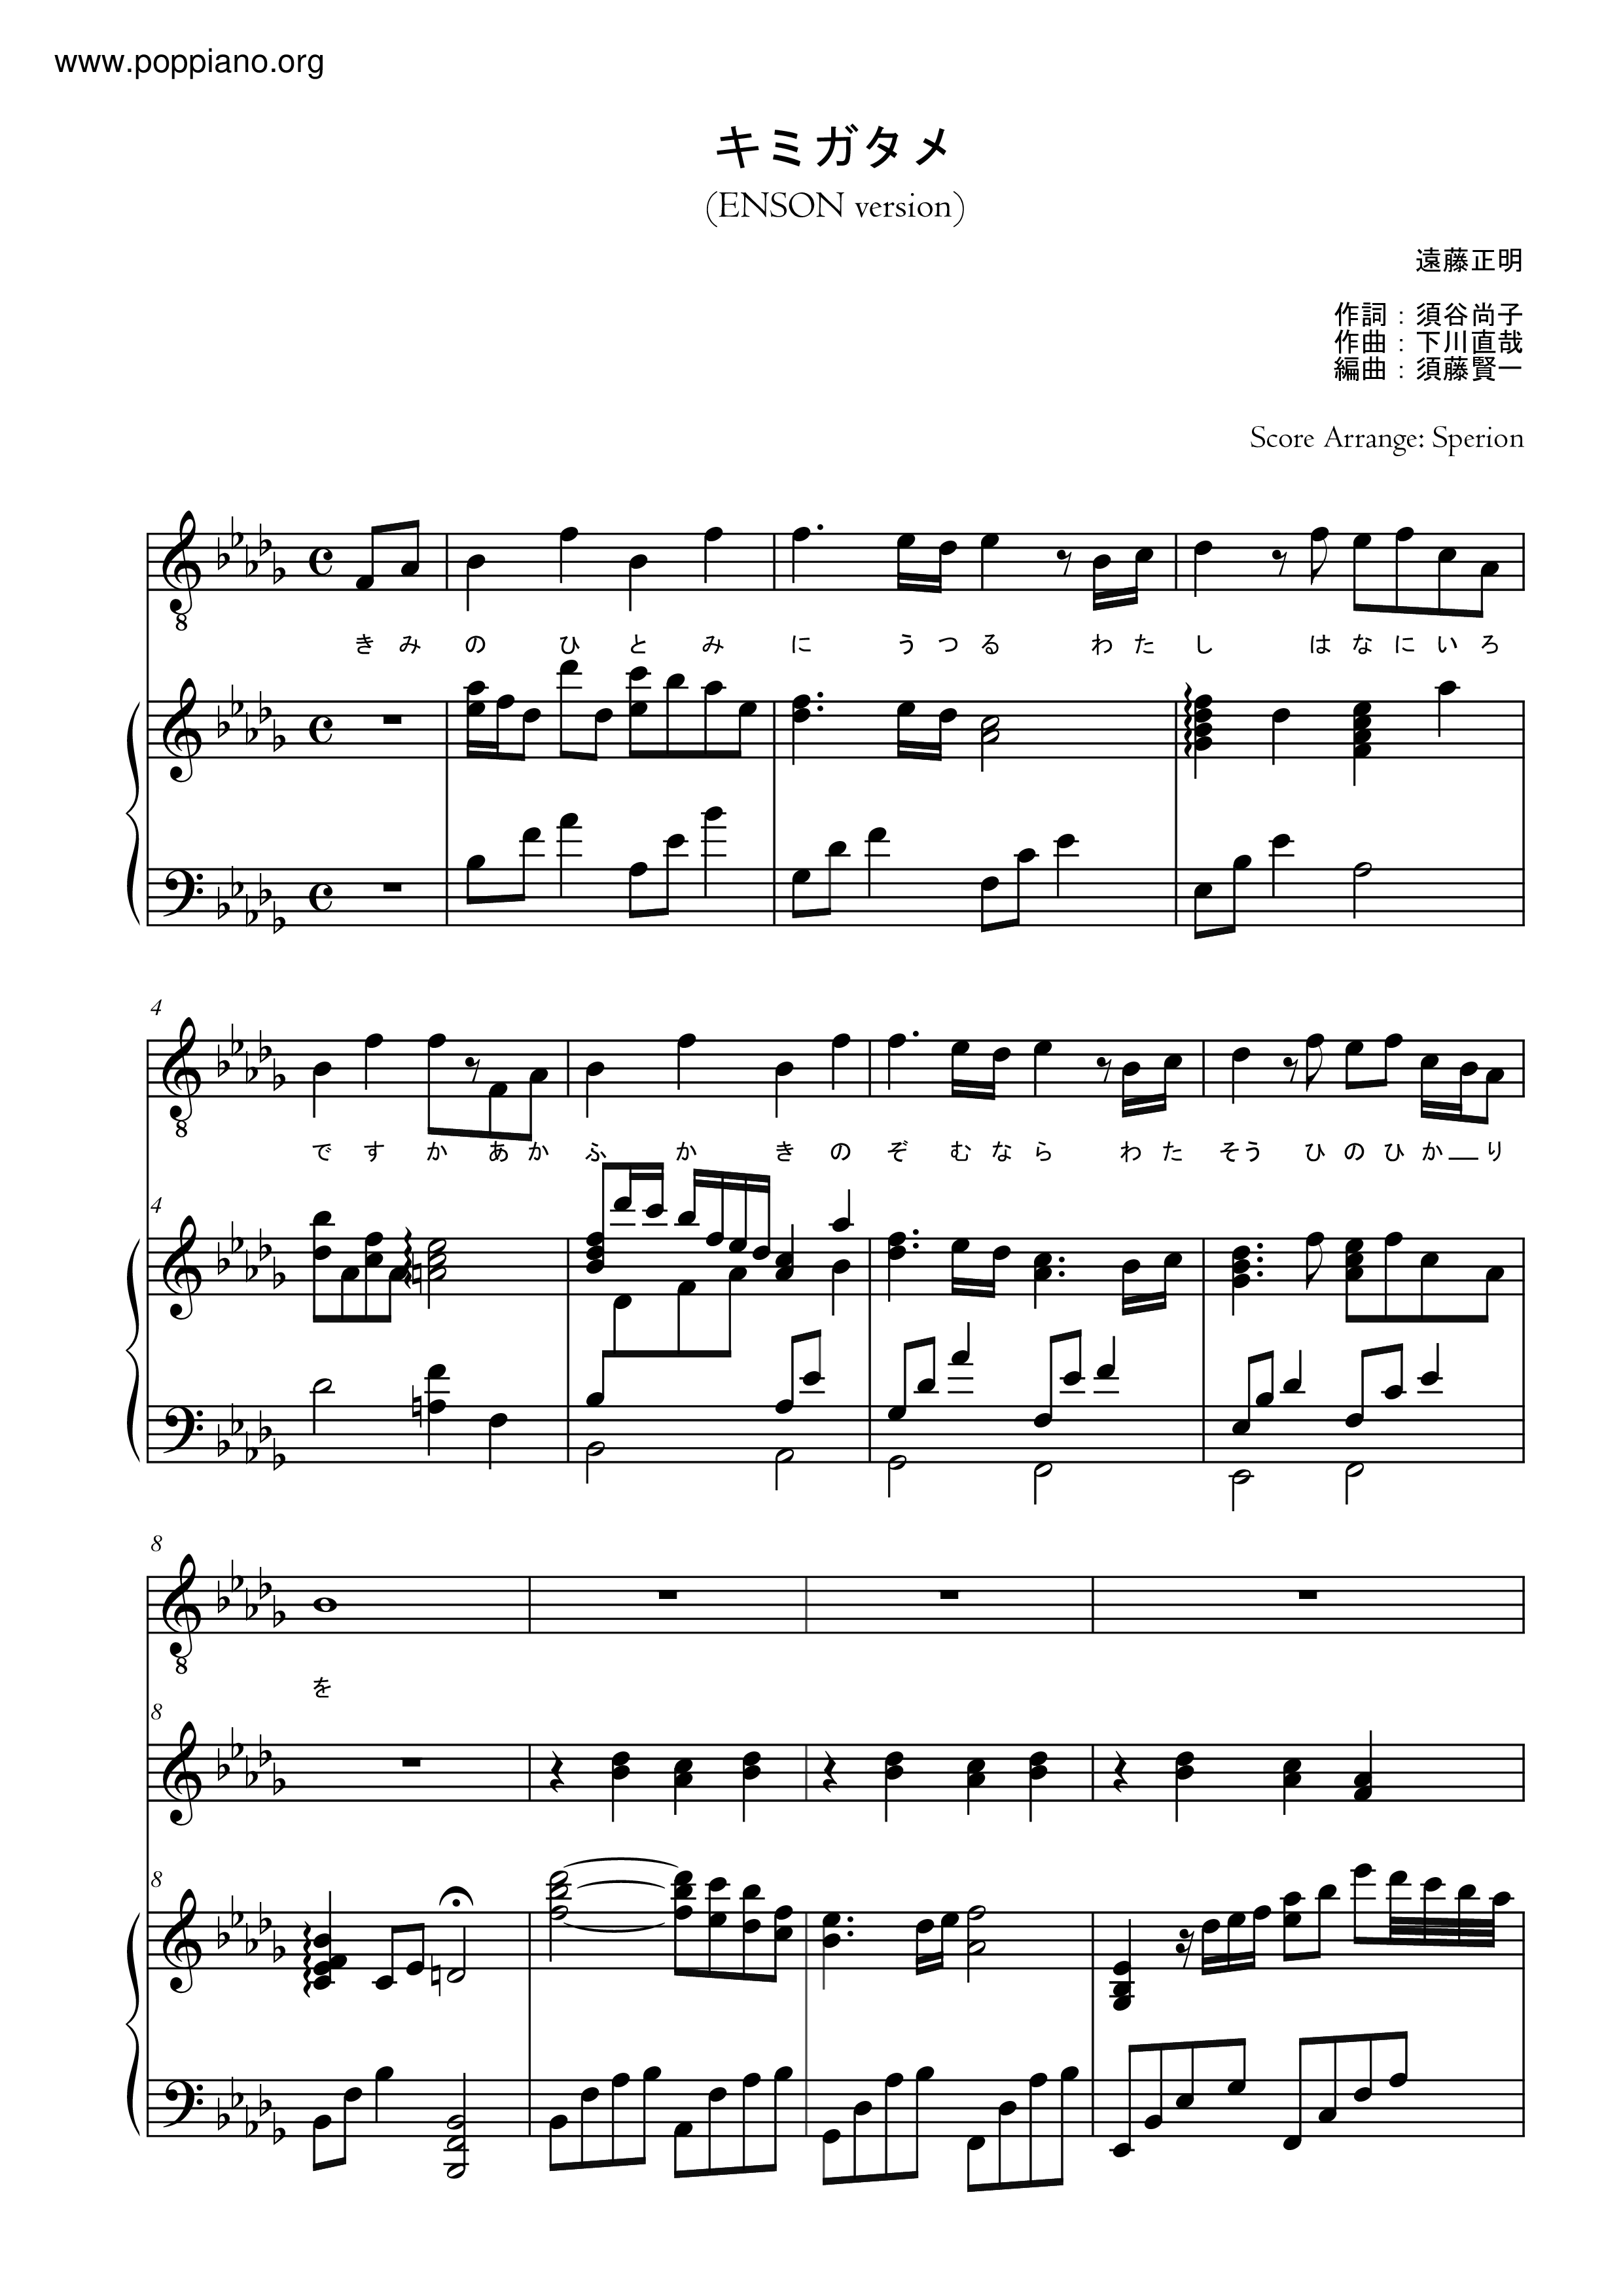 キミガタメ (Kimi Ga Tame) / Suaraピアノ譜